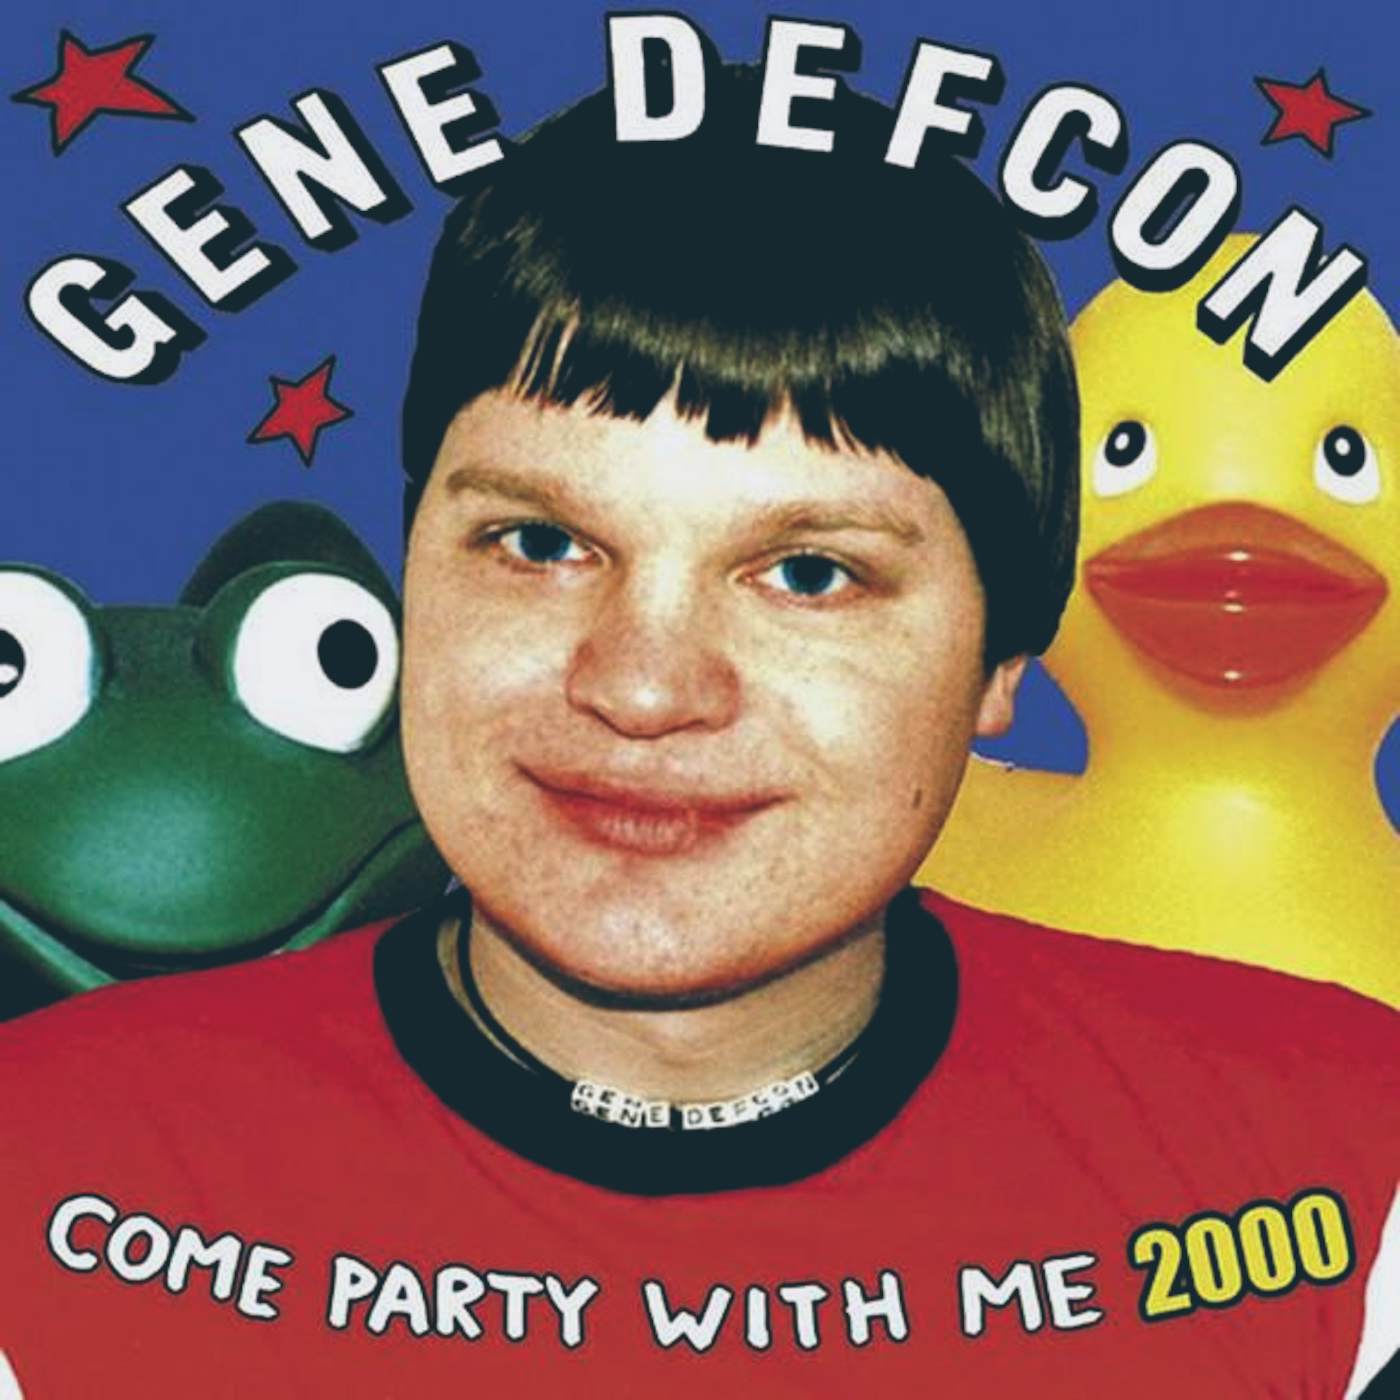 Gene Defcon